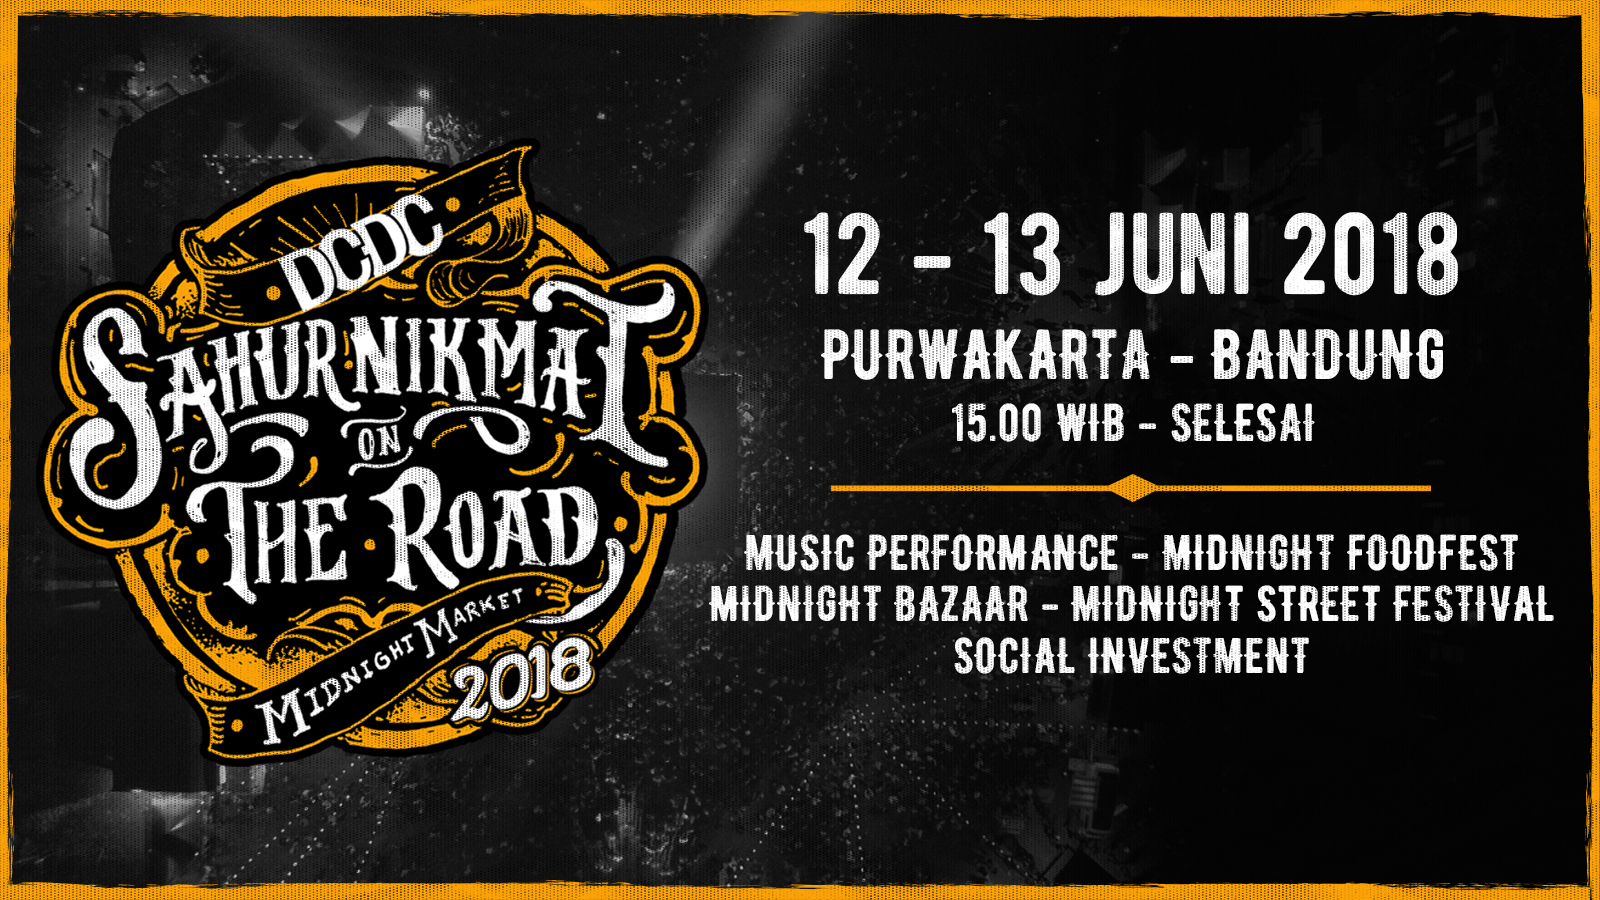 DCDC Sahur Nikmat On The Road 2018 Hadir di Purwakarta dan Bandung!